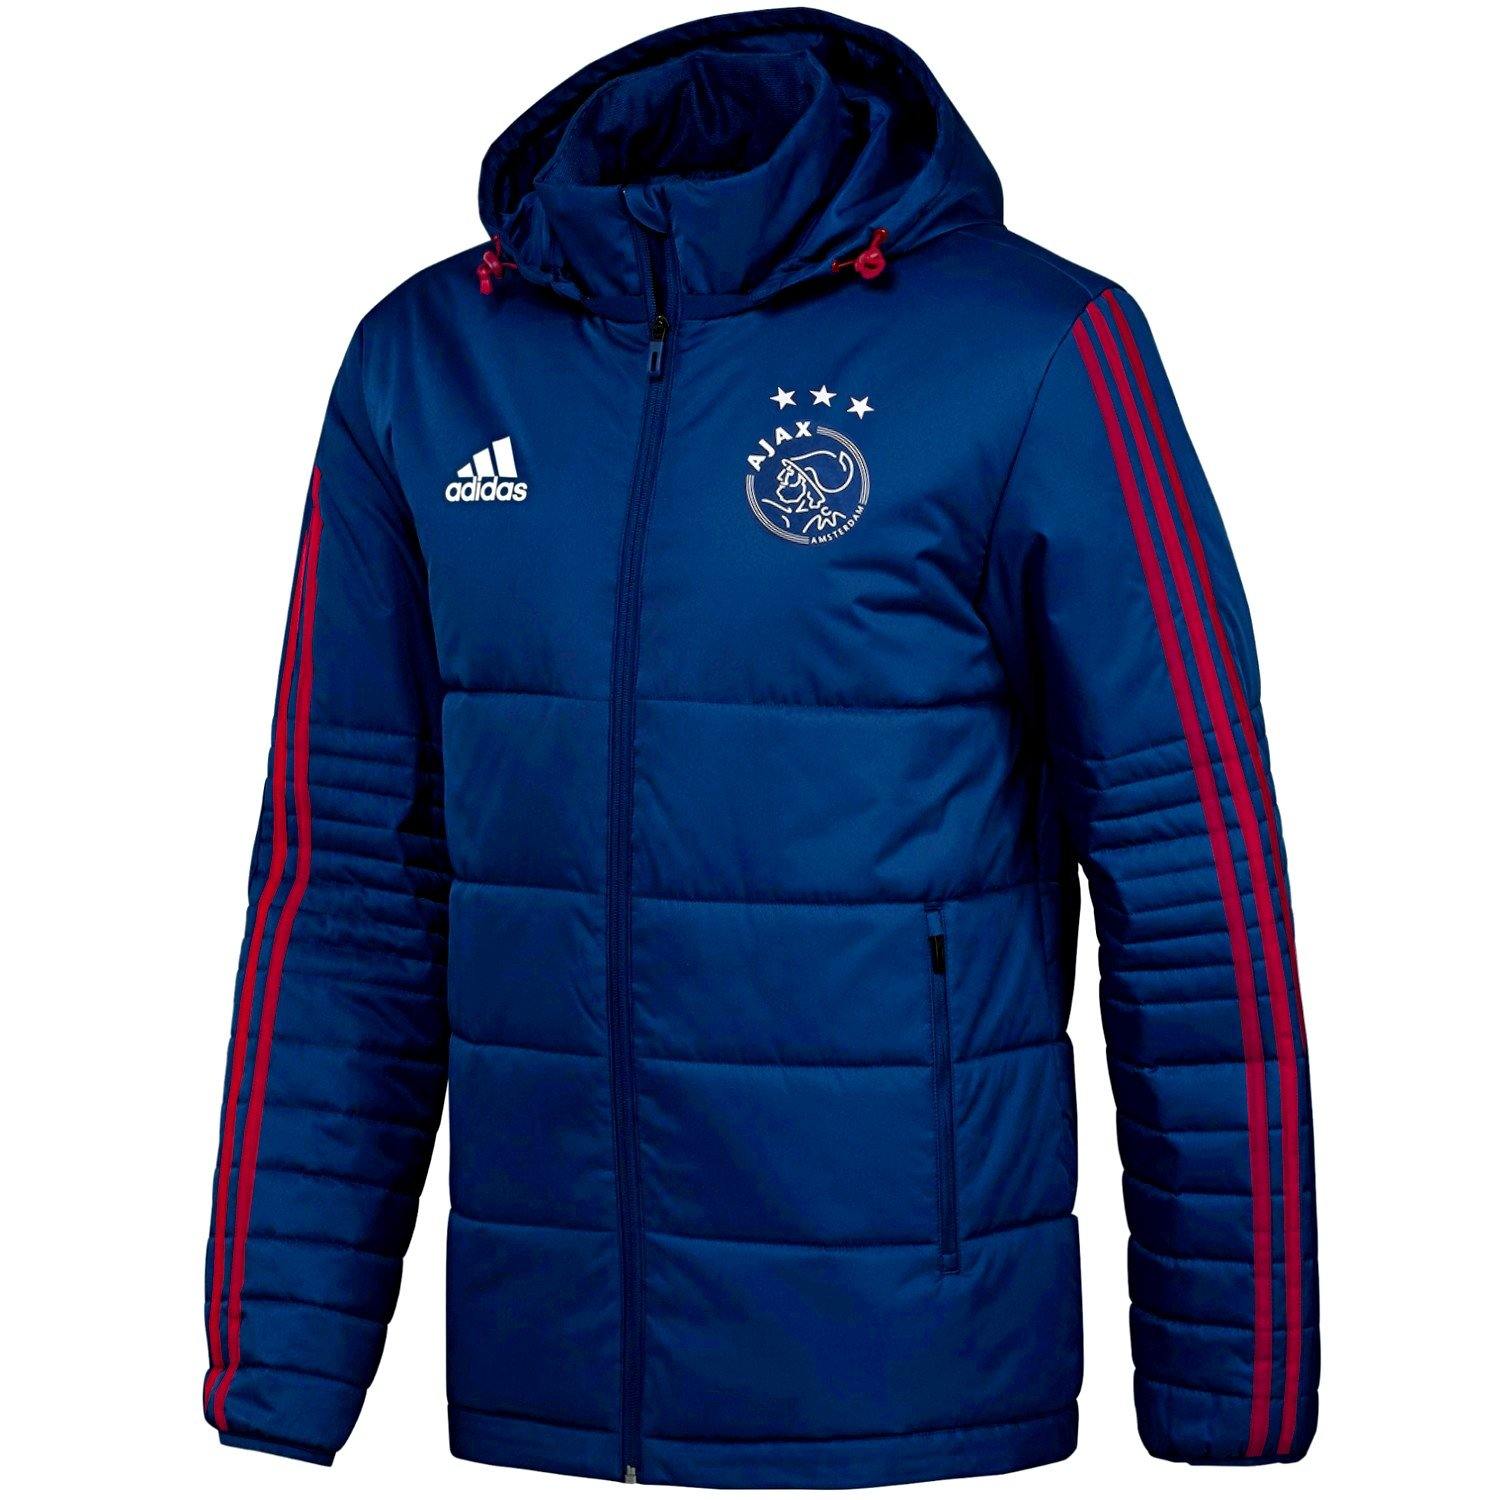 Ajax winter bench soccer jacket 2018 - Adidas – SoccerTracksuits.com